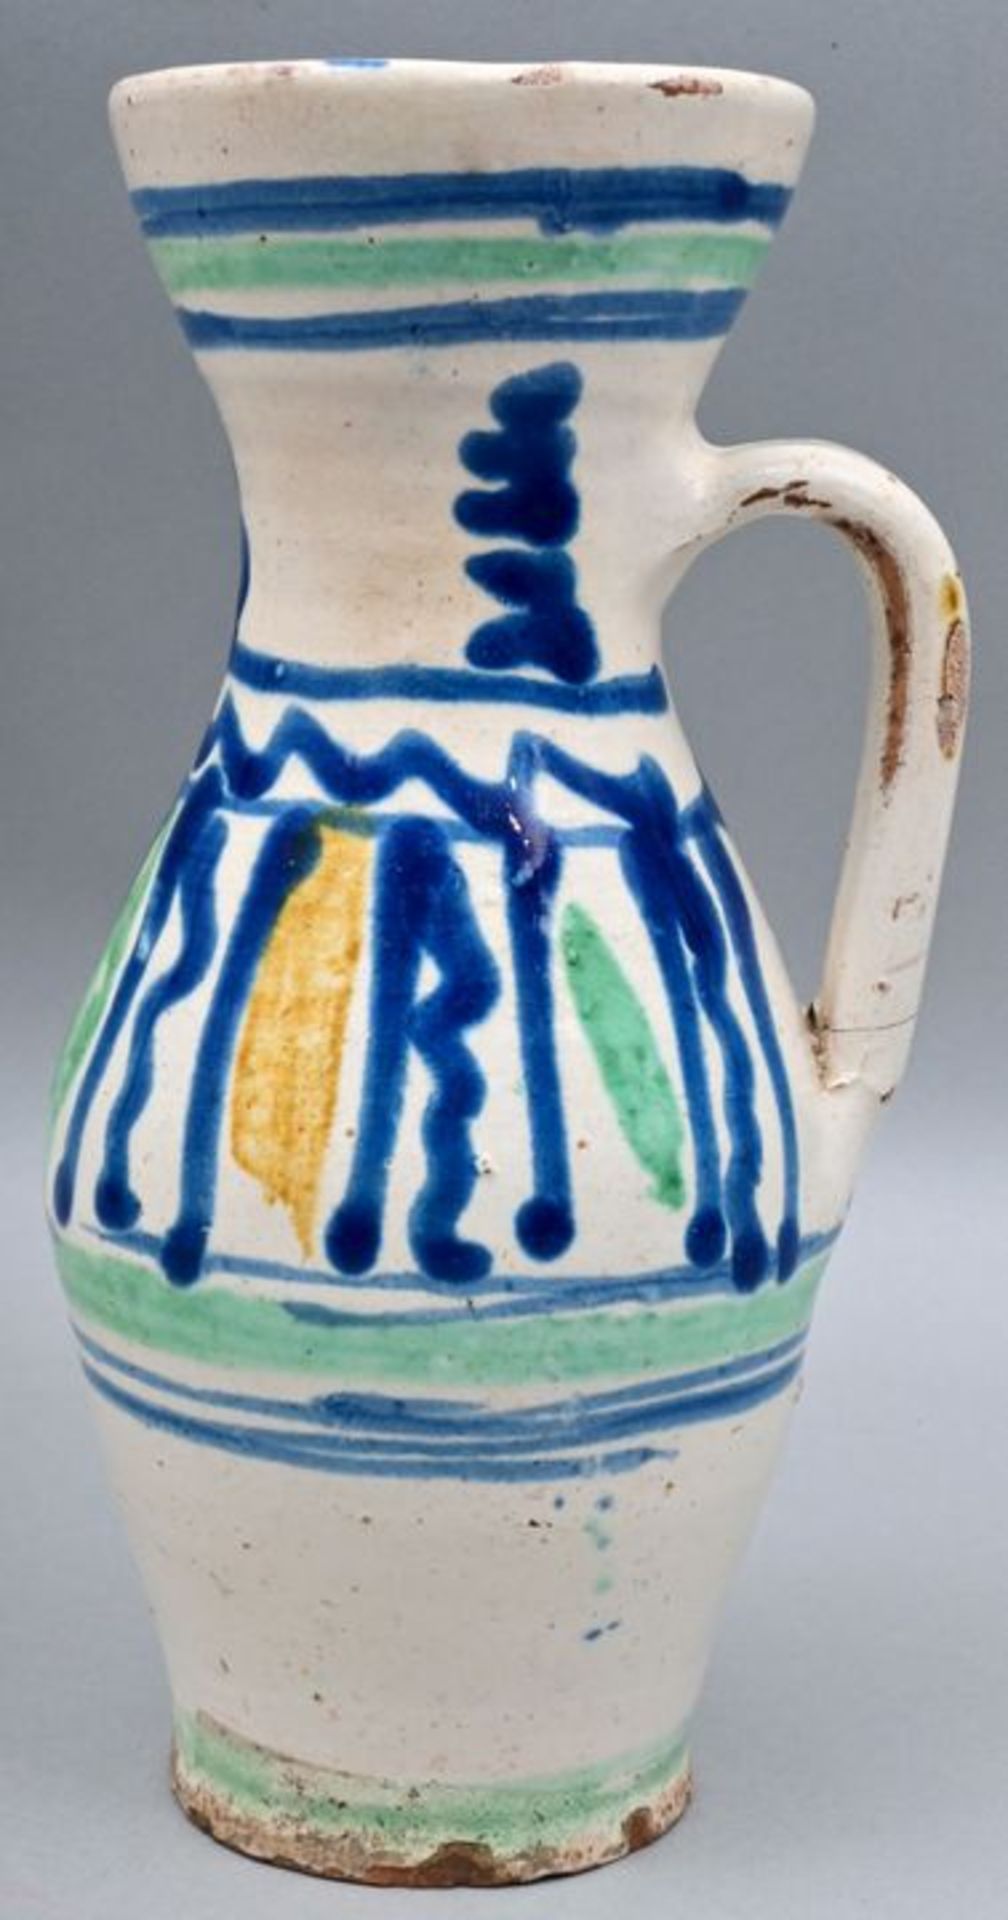 Krug, Siebenbürgen/ ceramic jug - Image 5 of 5